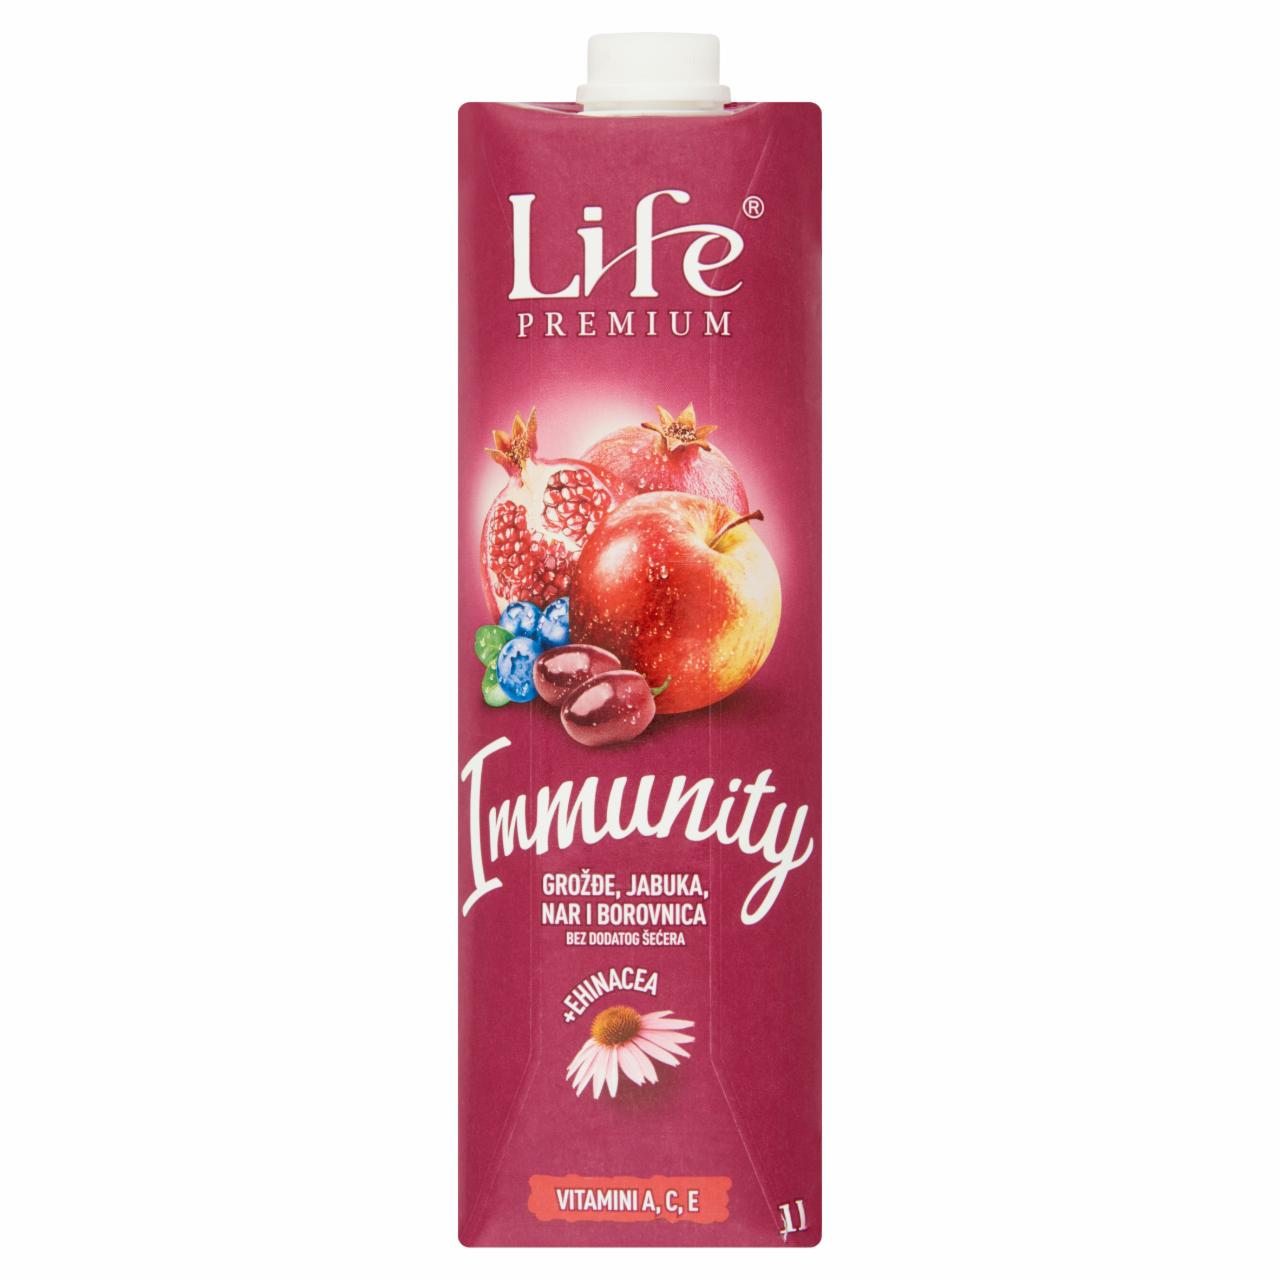 Képek - Life Premium Immunity vegyes gyümölcsital 1 l